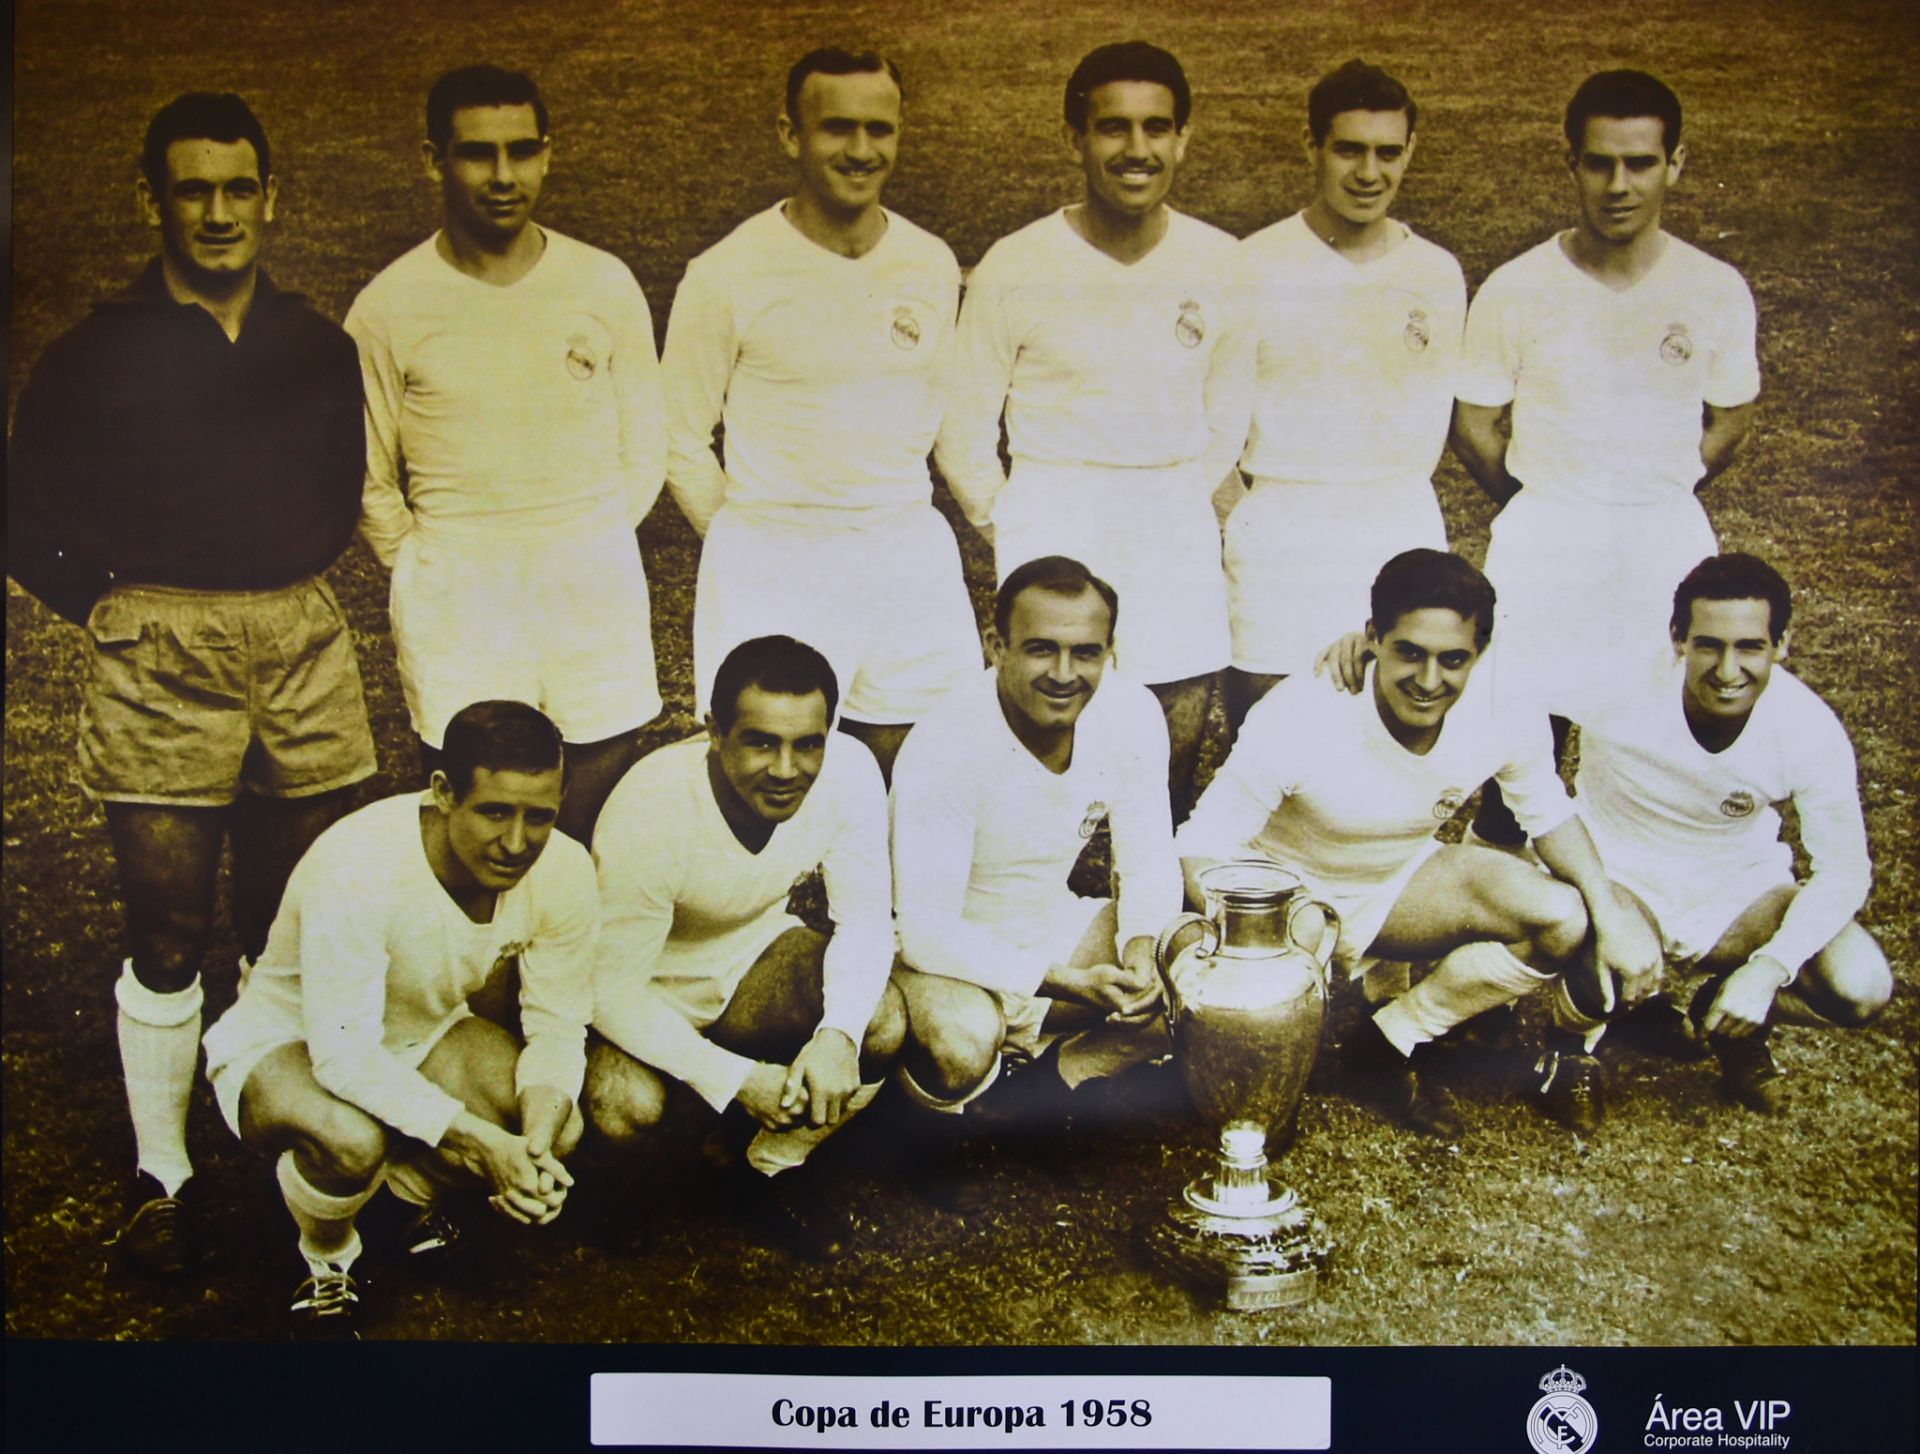 Đội bóng huyền thoại giành sáu UEFA Cup Winner’s Cup vào những năm 1956-1960, 1966. Lần tiếp theo, Real Madrid thắng Cup “tai voi” vào năm 1998.